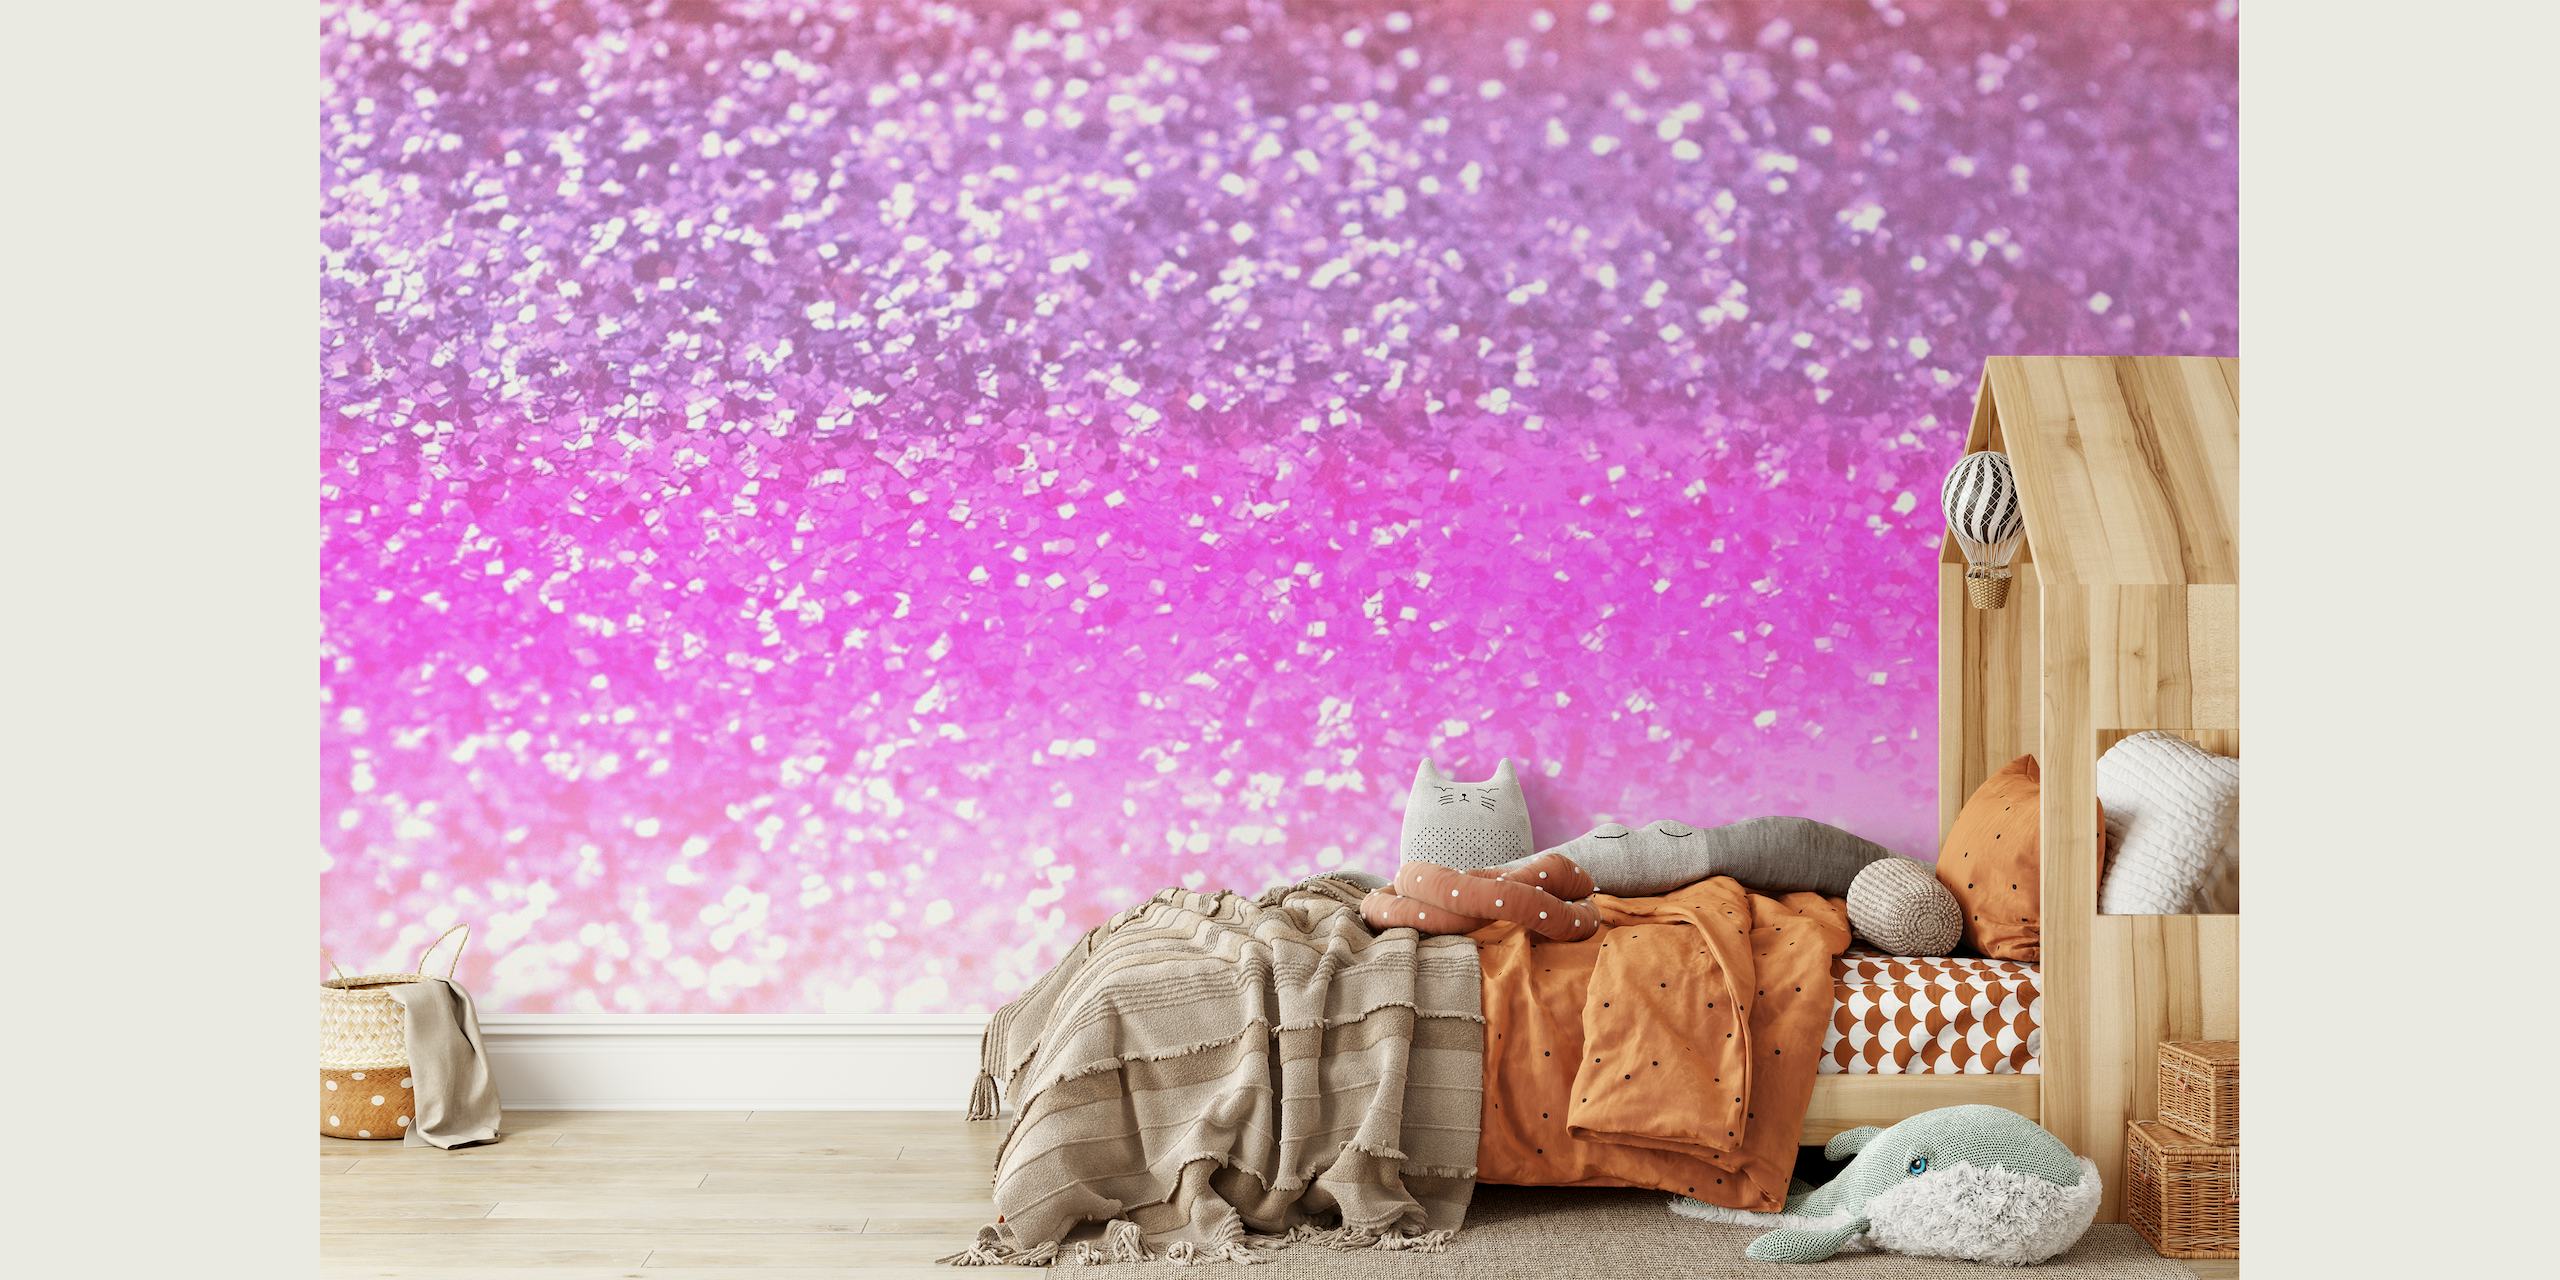 Glitterroze en paarse gradiënt muurschildering voor een magische sfeer in de kamer.